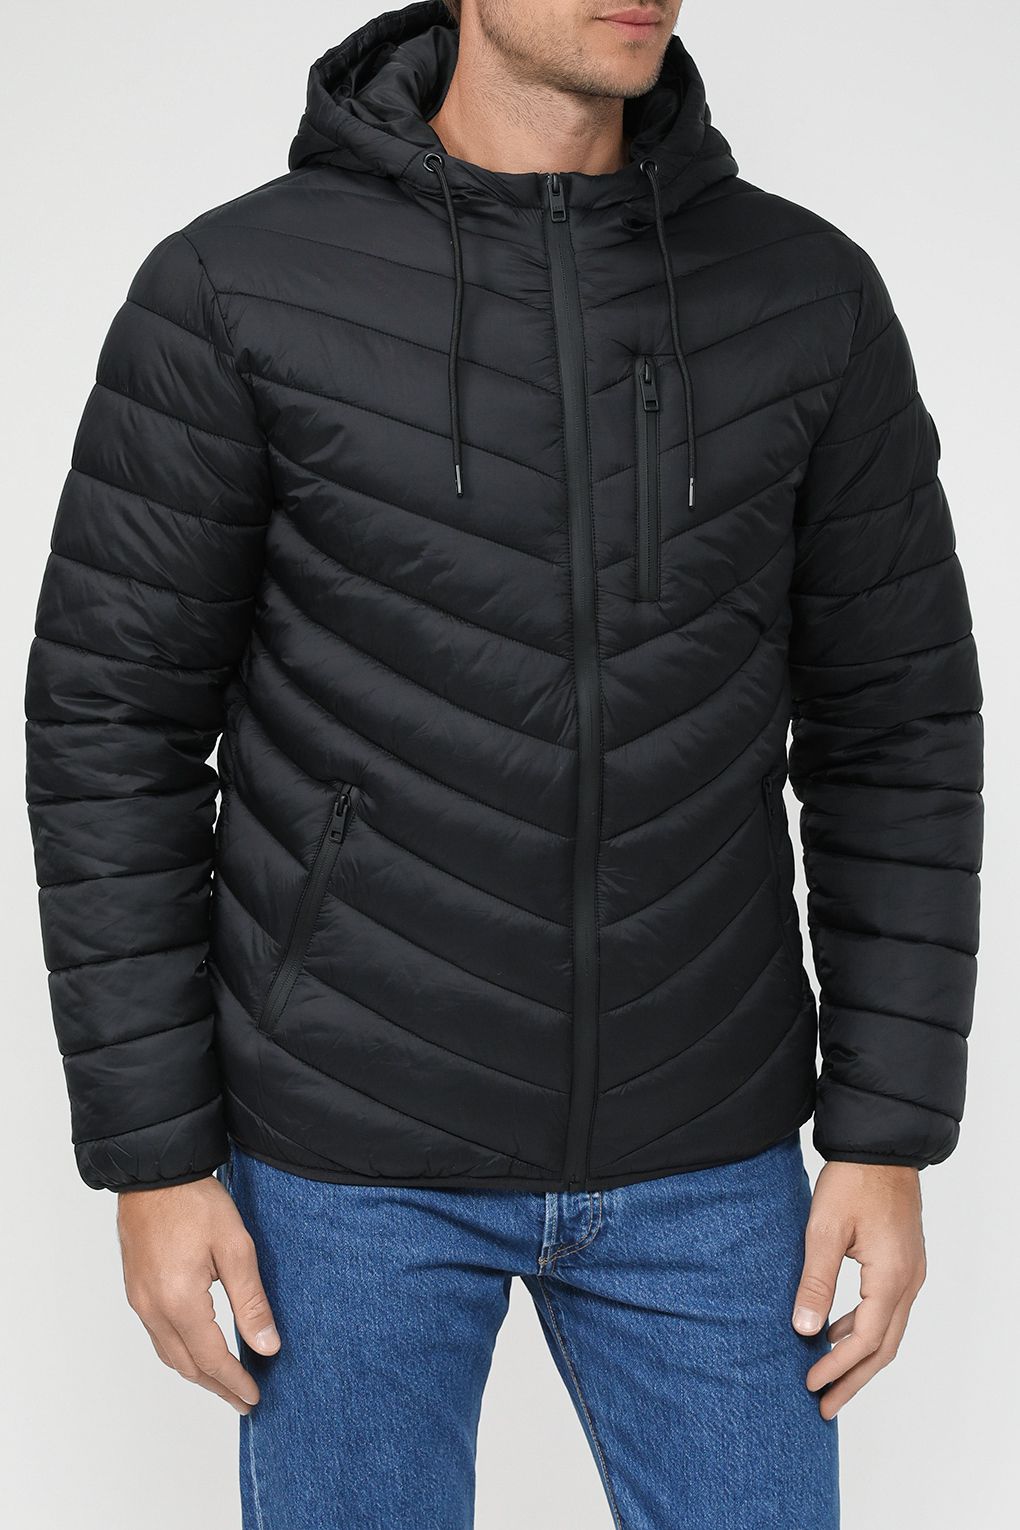 Куртка мужская Loft LF2033231 черная M